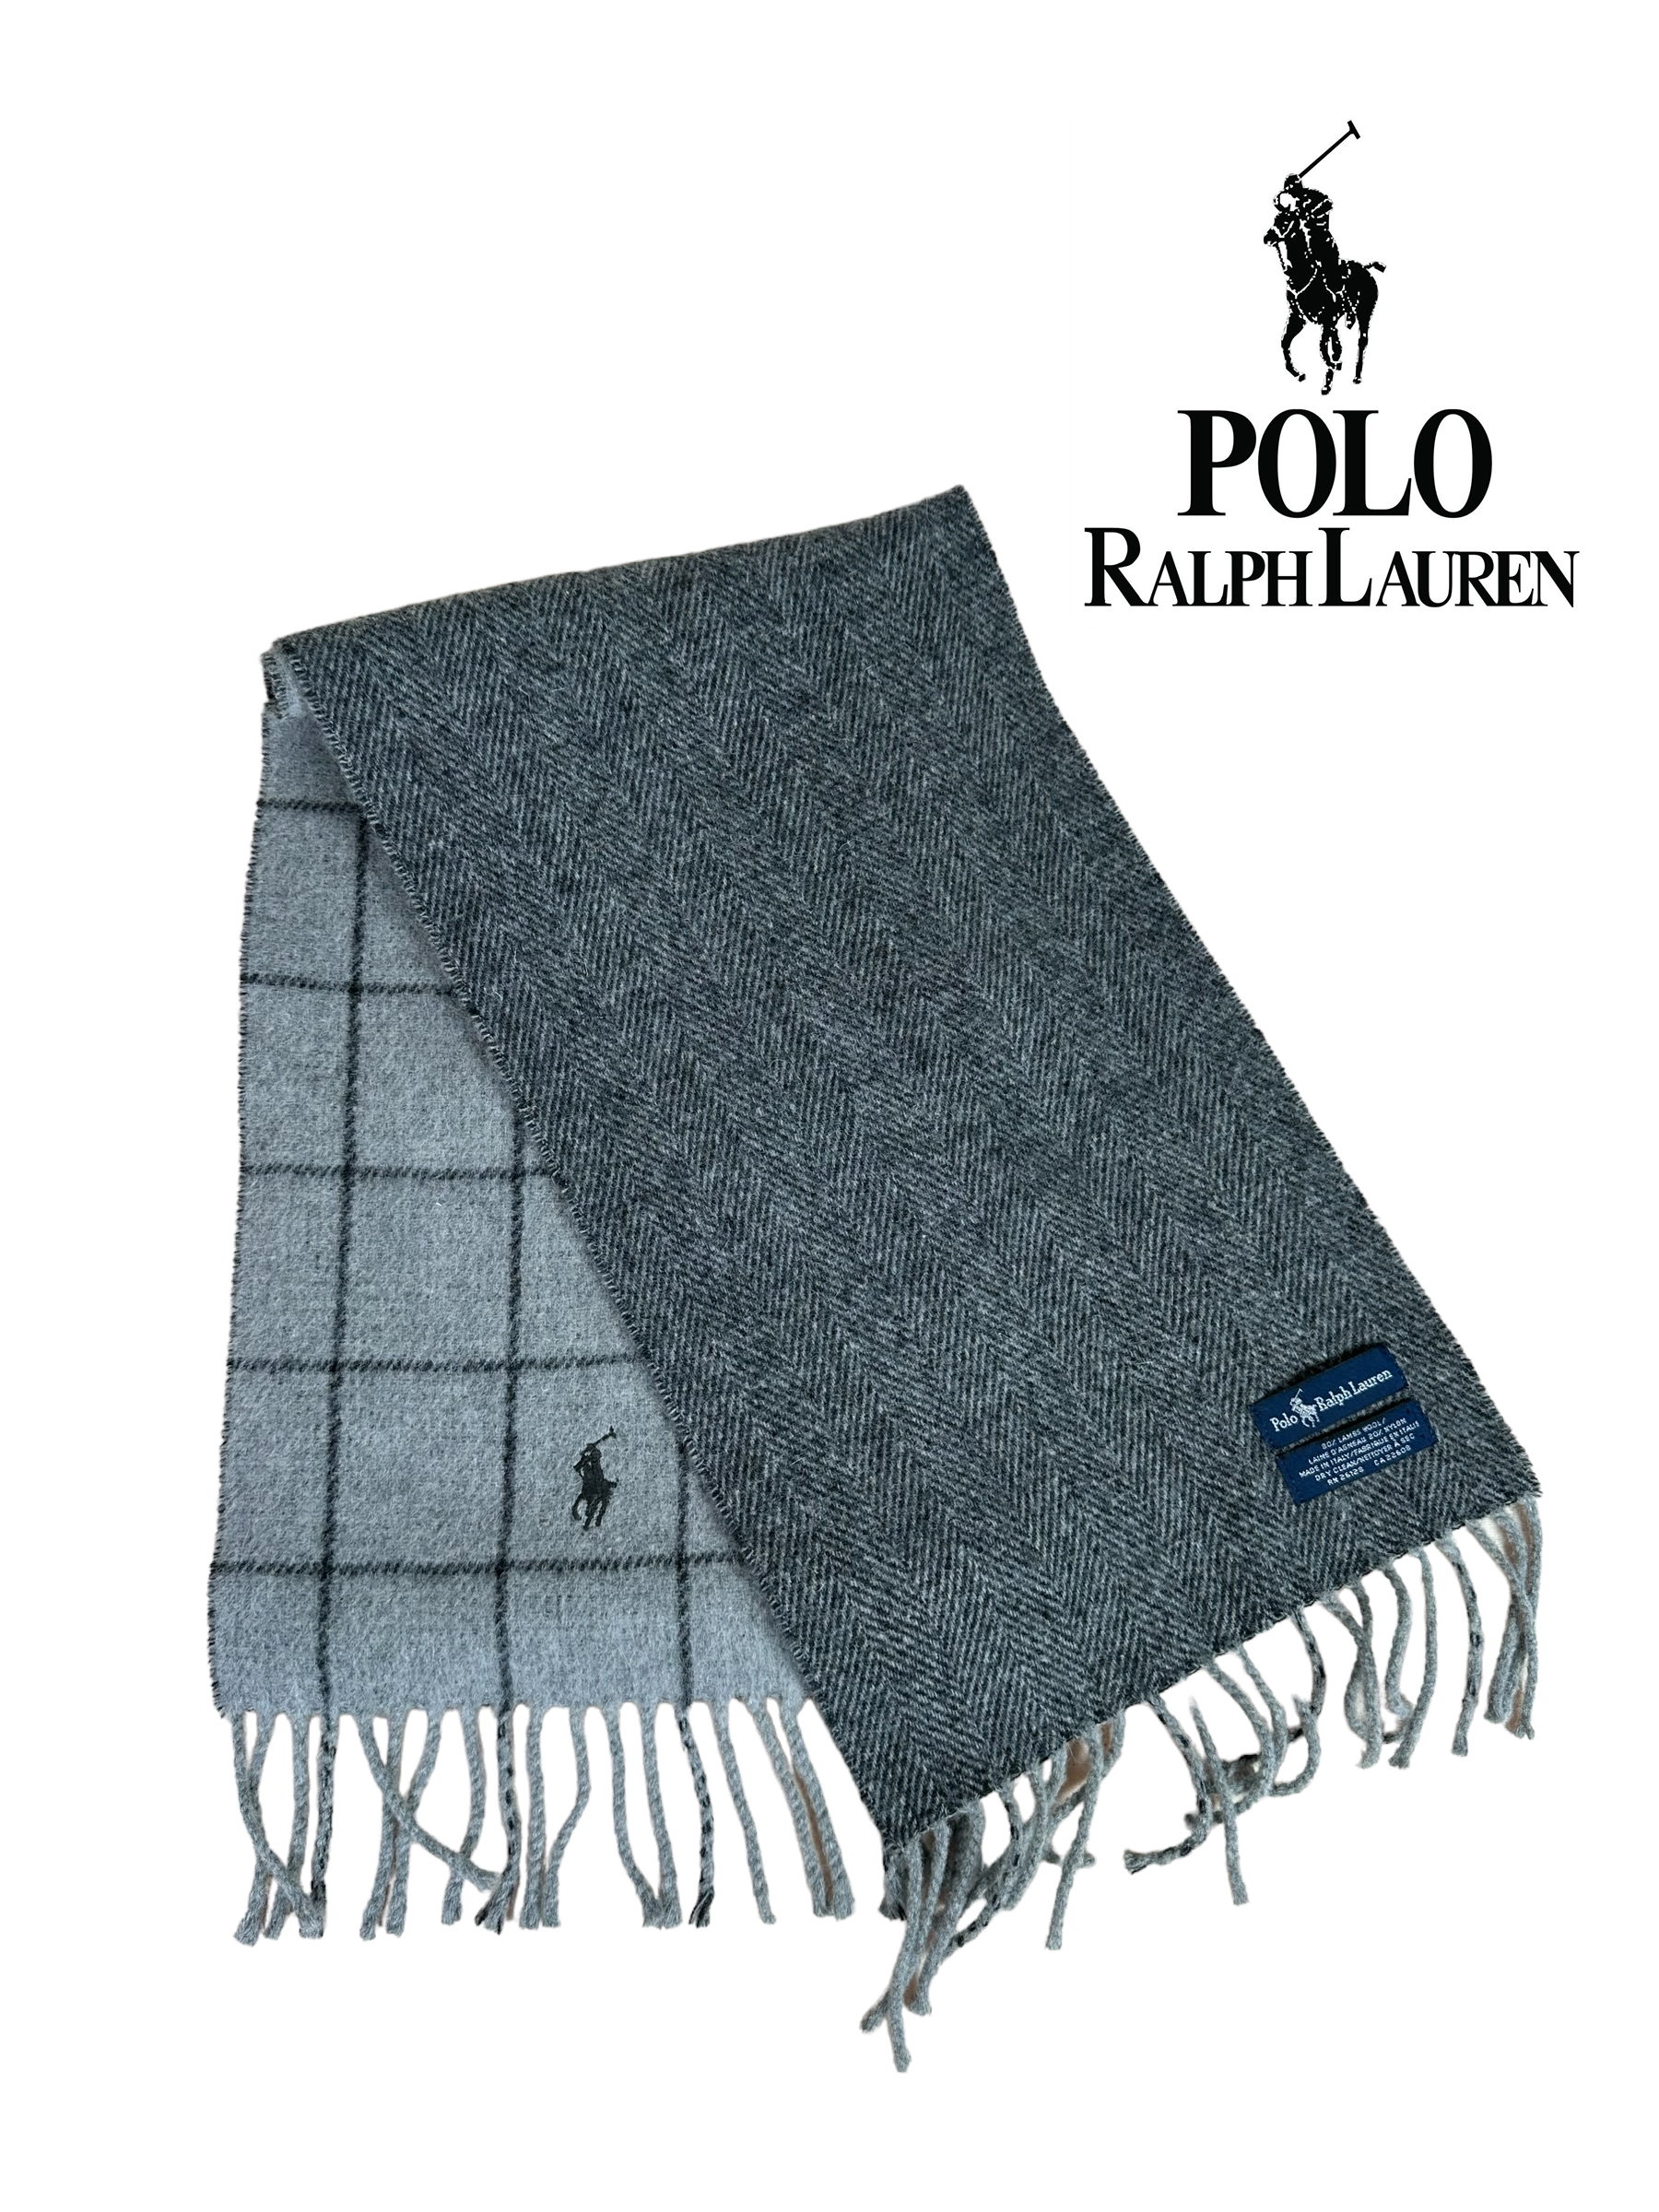 Polo Ralph Lauren muffler / scarf